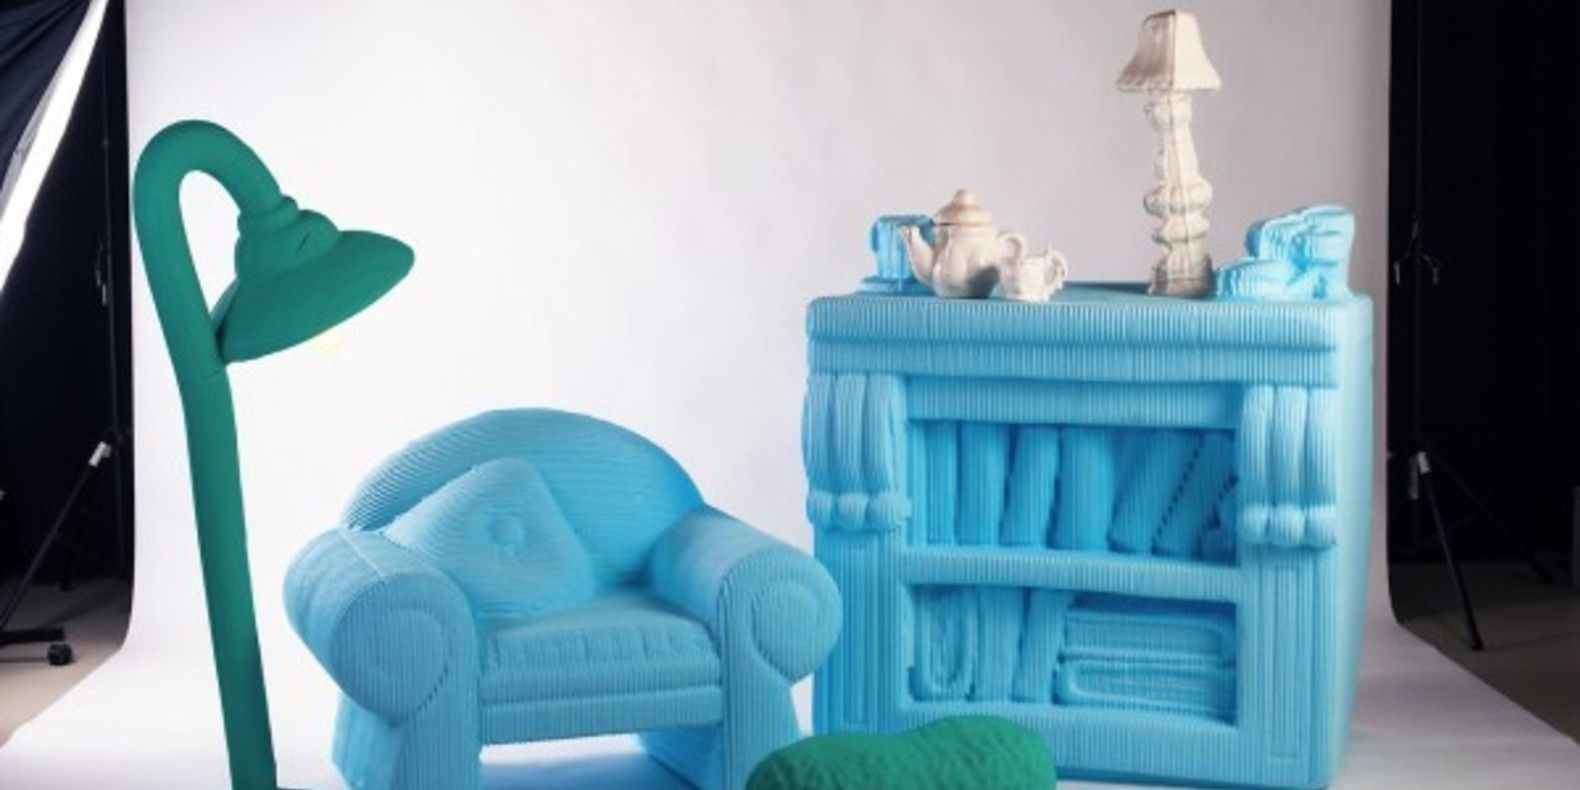 silva lovasova project art creativity cults cults3D fichier 3D impression printing furniture meubles mobilier de poupées imprimé en 3D doll house 4